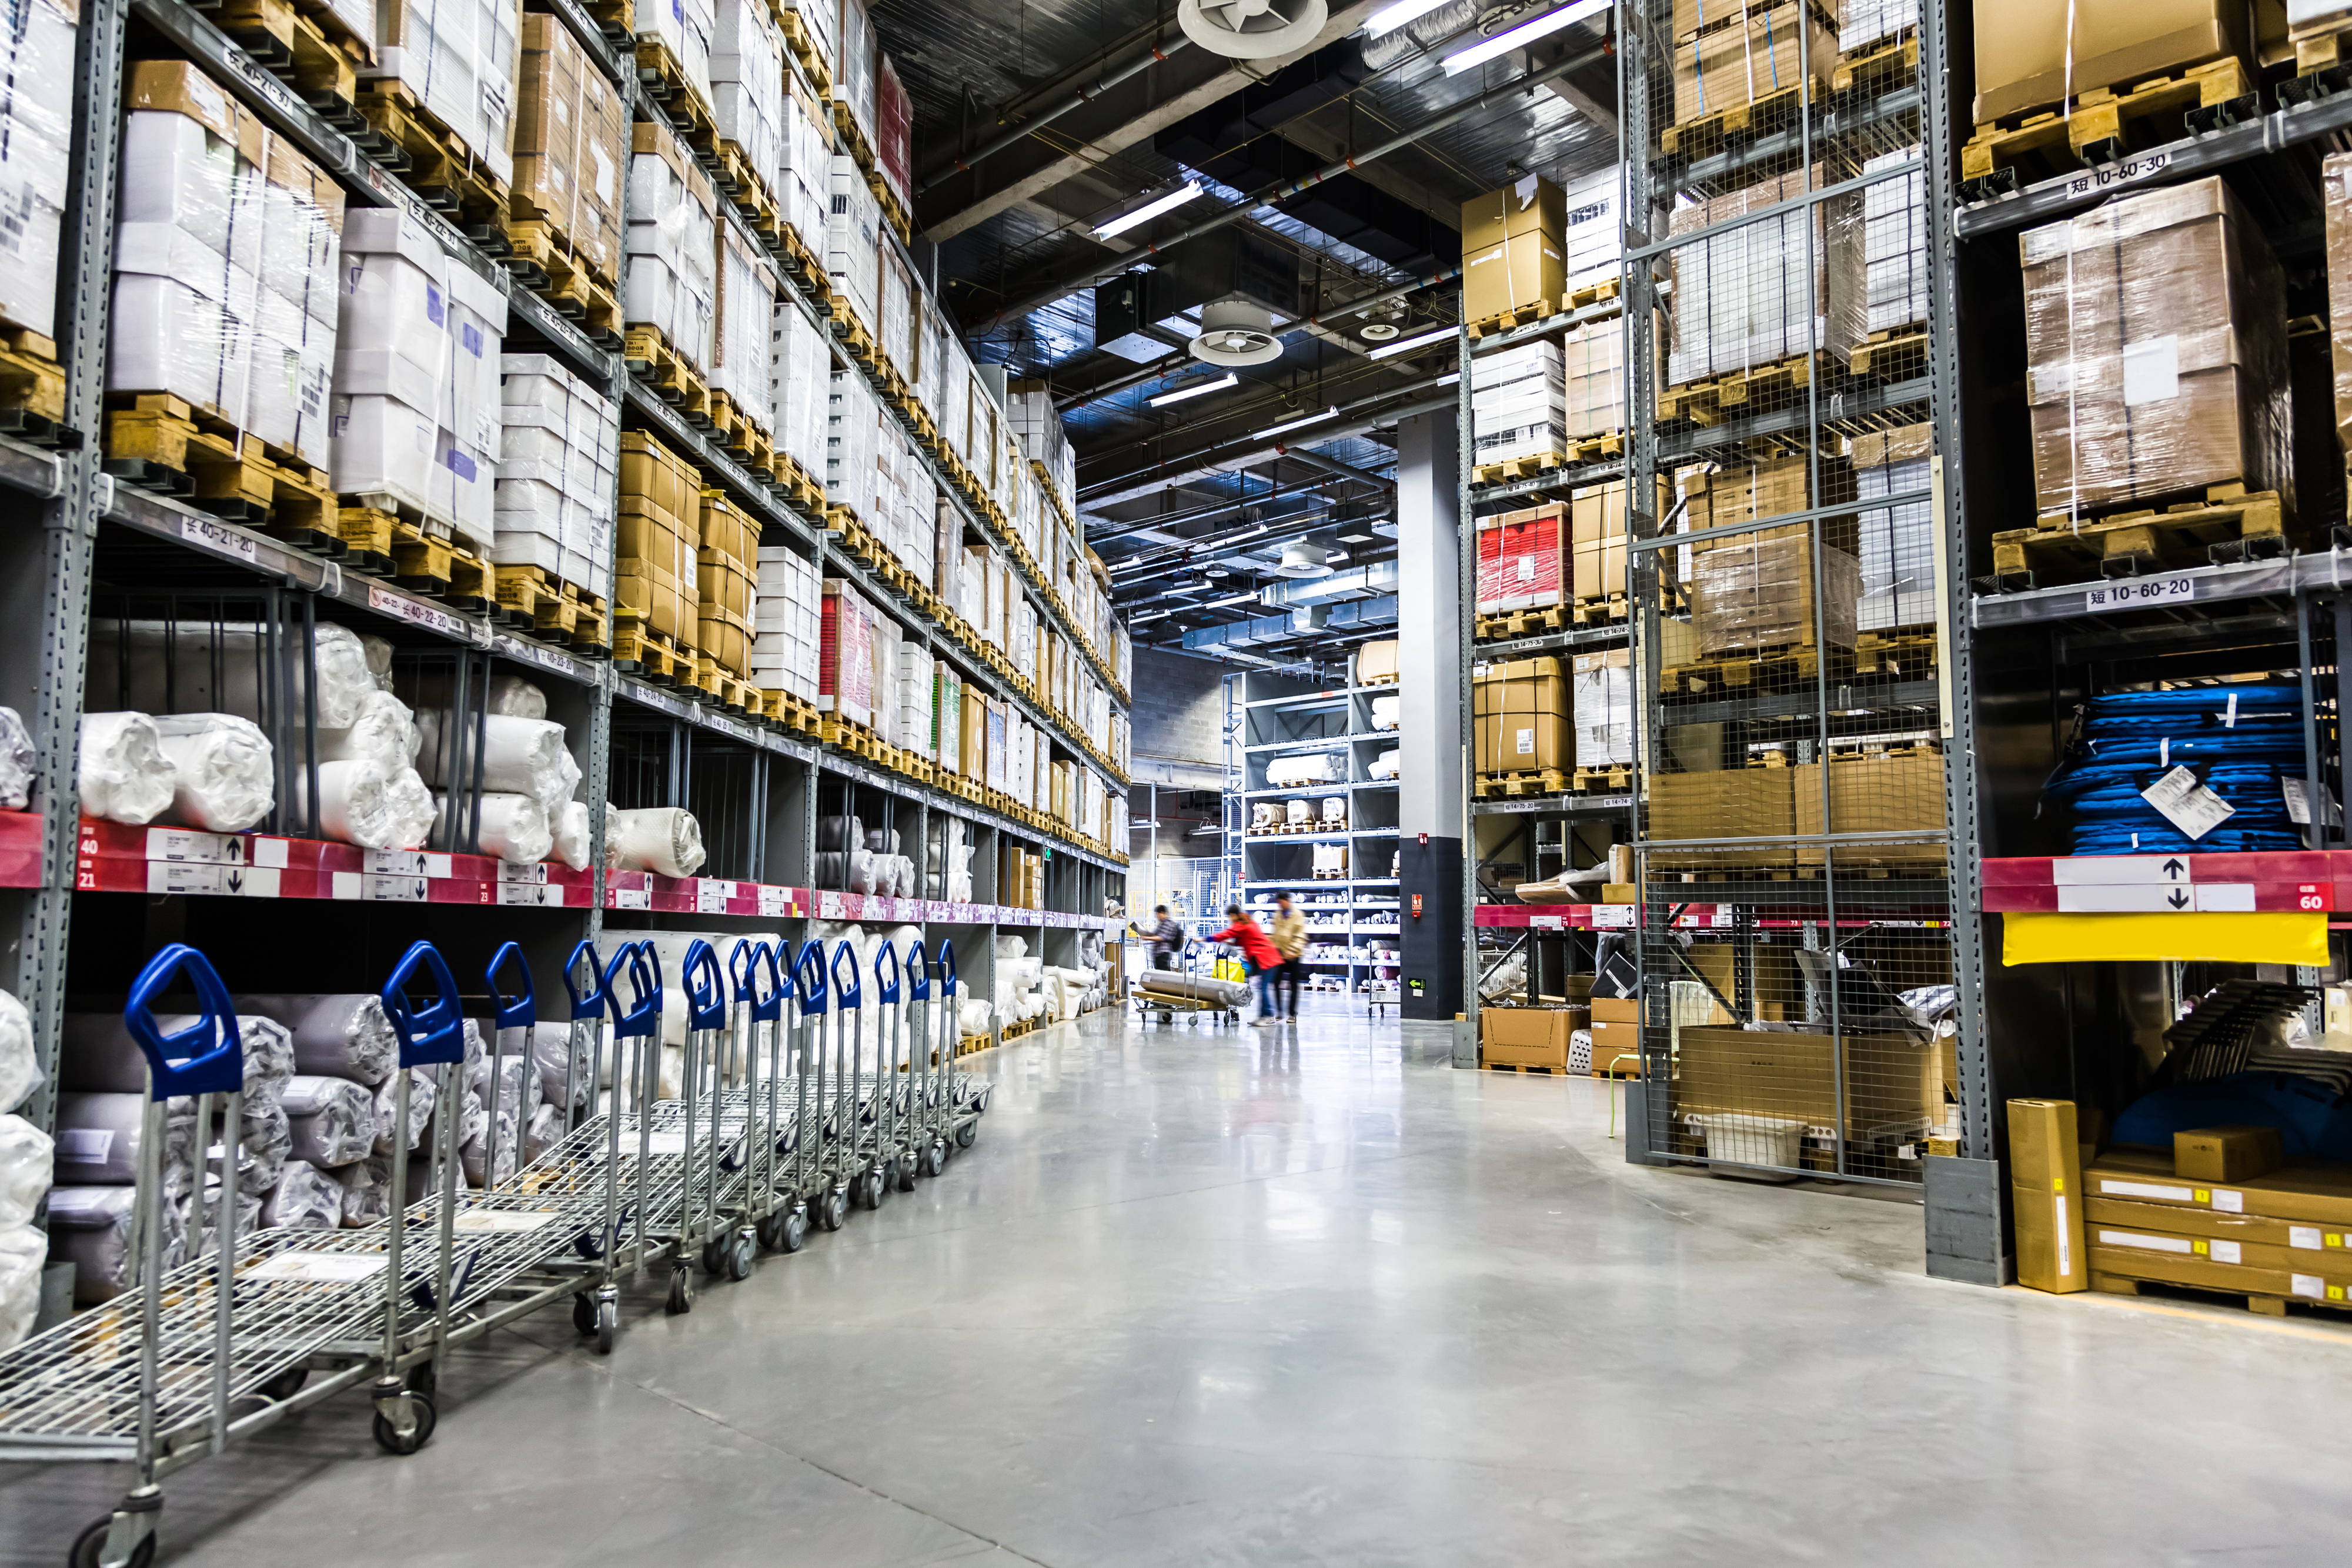 A warehouse | Source: Shutterstock